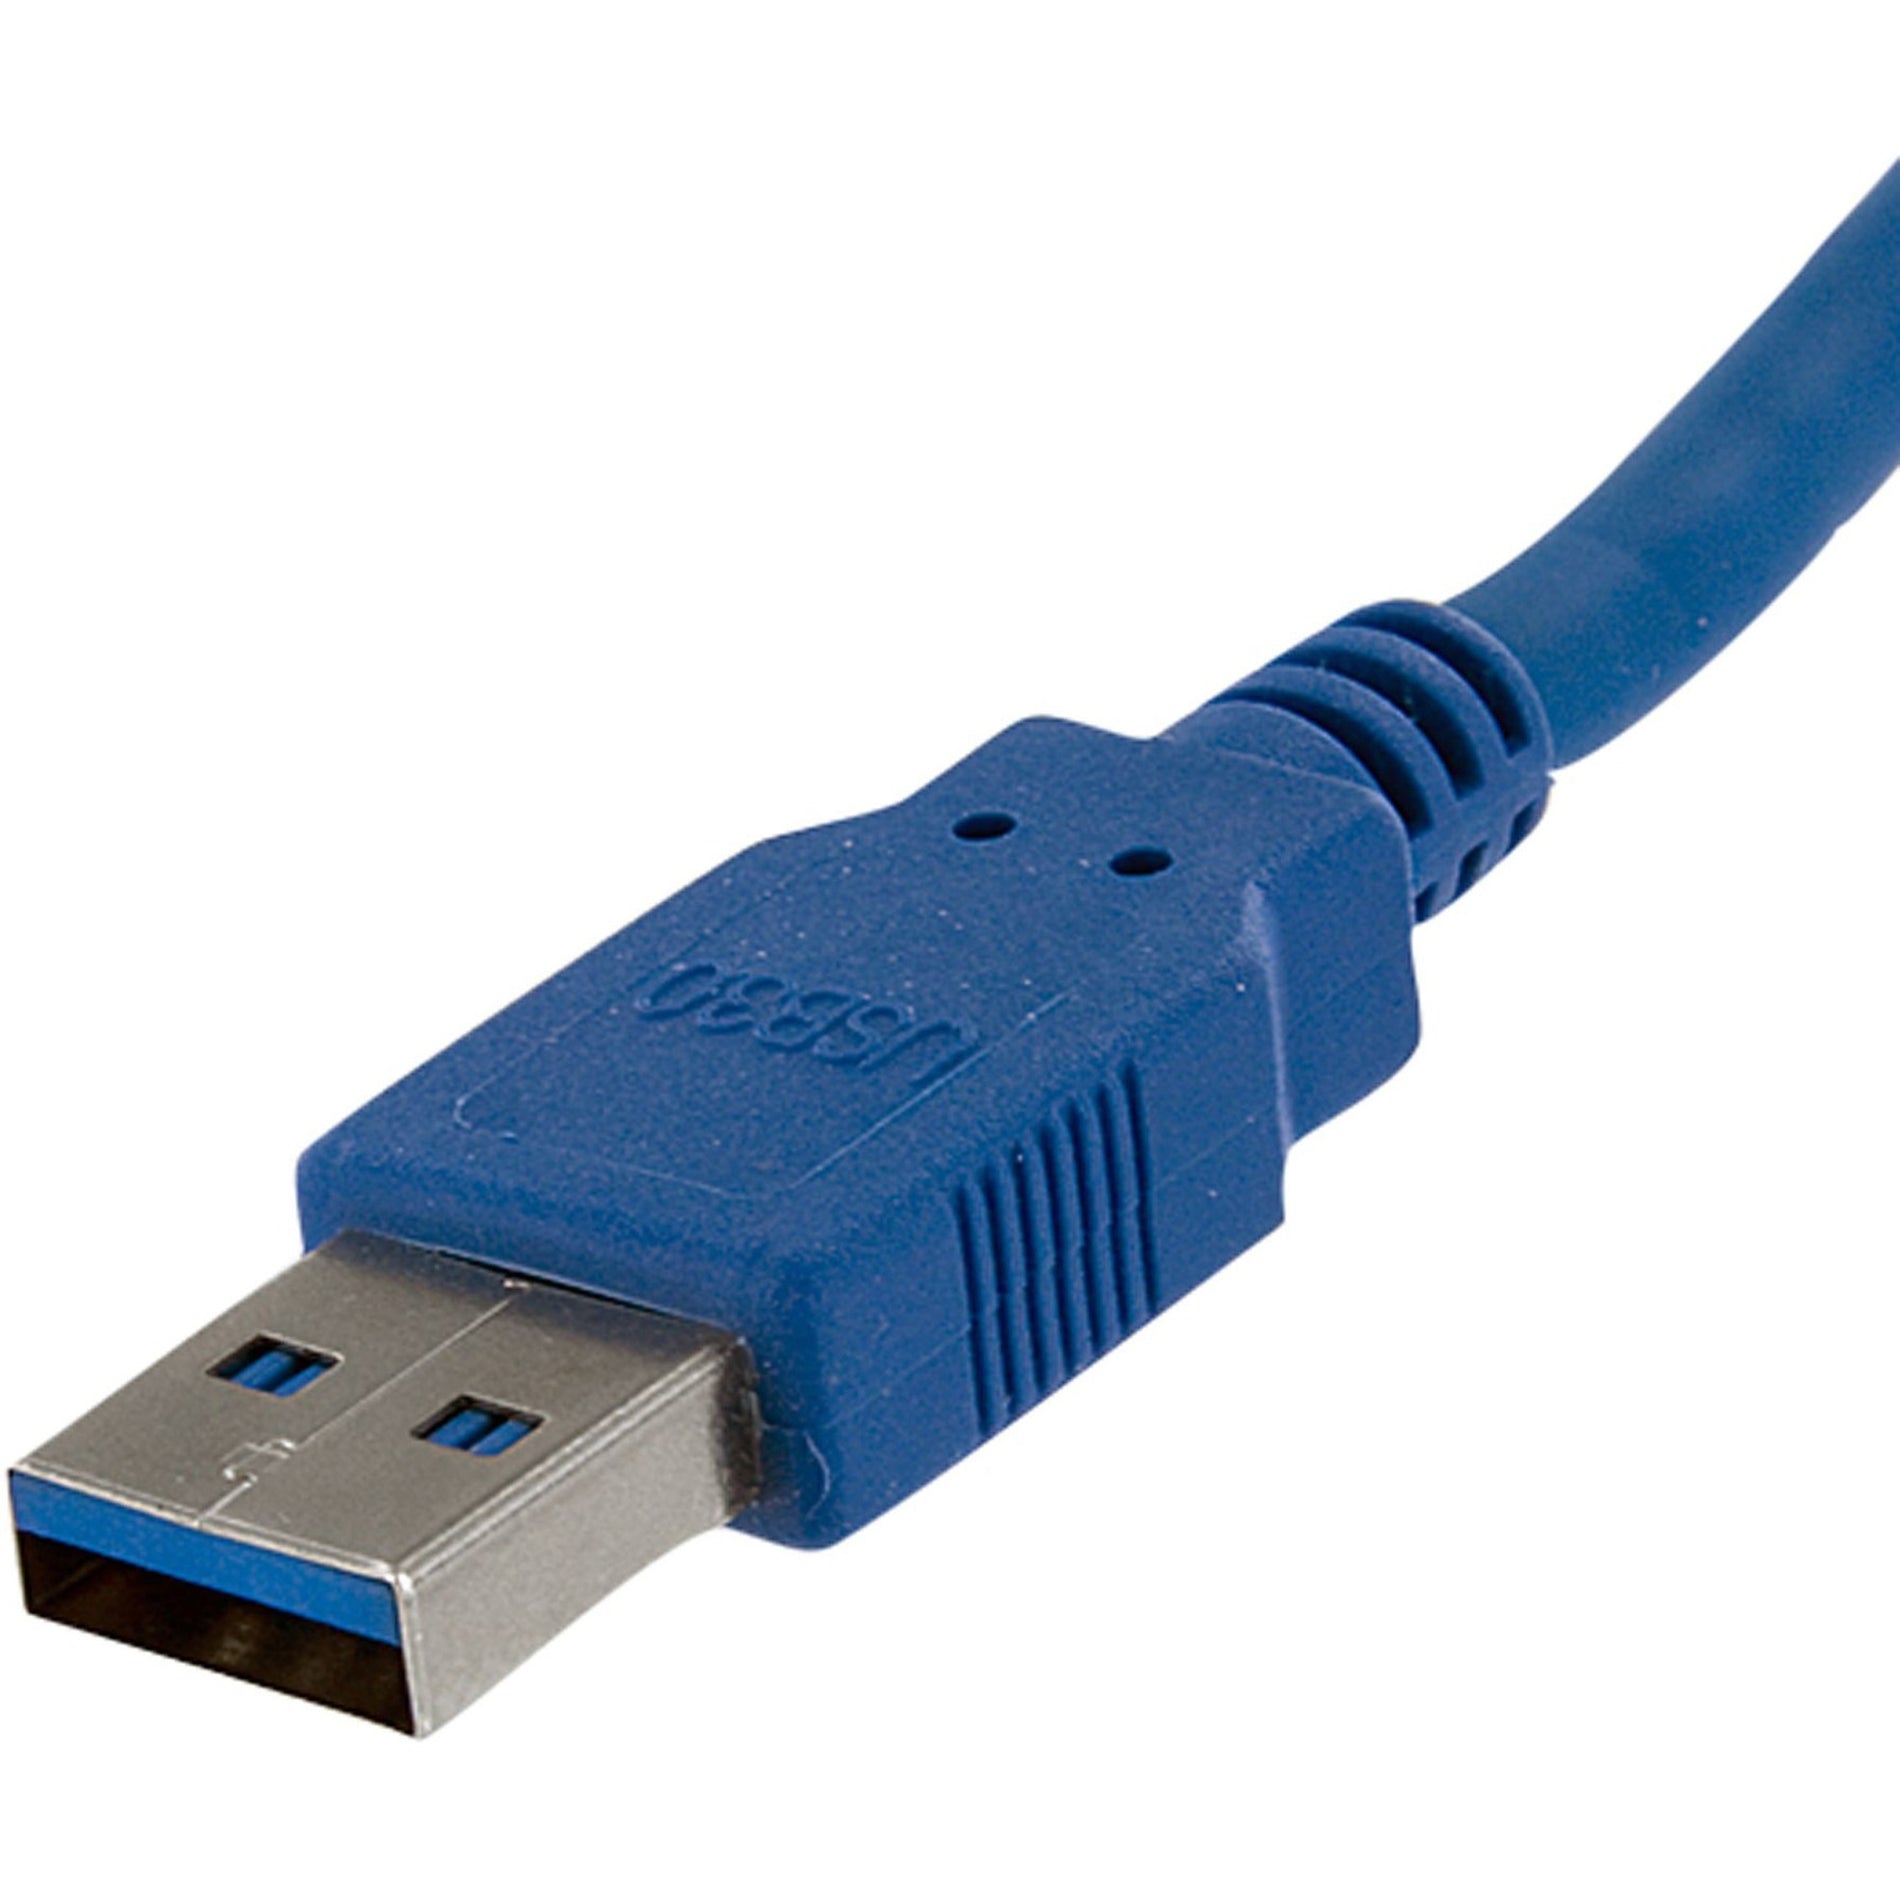 星美科技 USB3SAA6 6 英尺超速 USB 3.0 电缆 A 至 A - M/M，高速数据传输， EMI 保护 星美科技